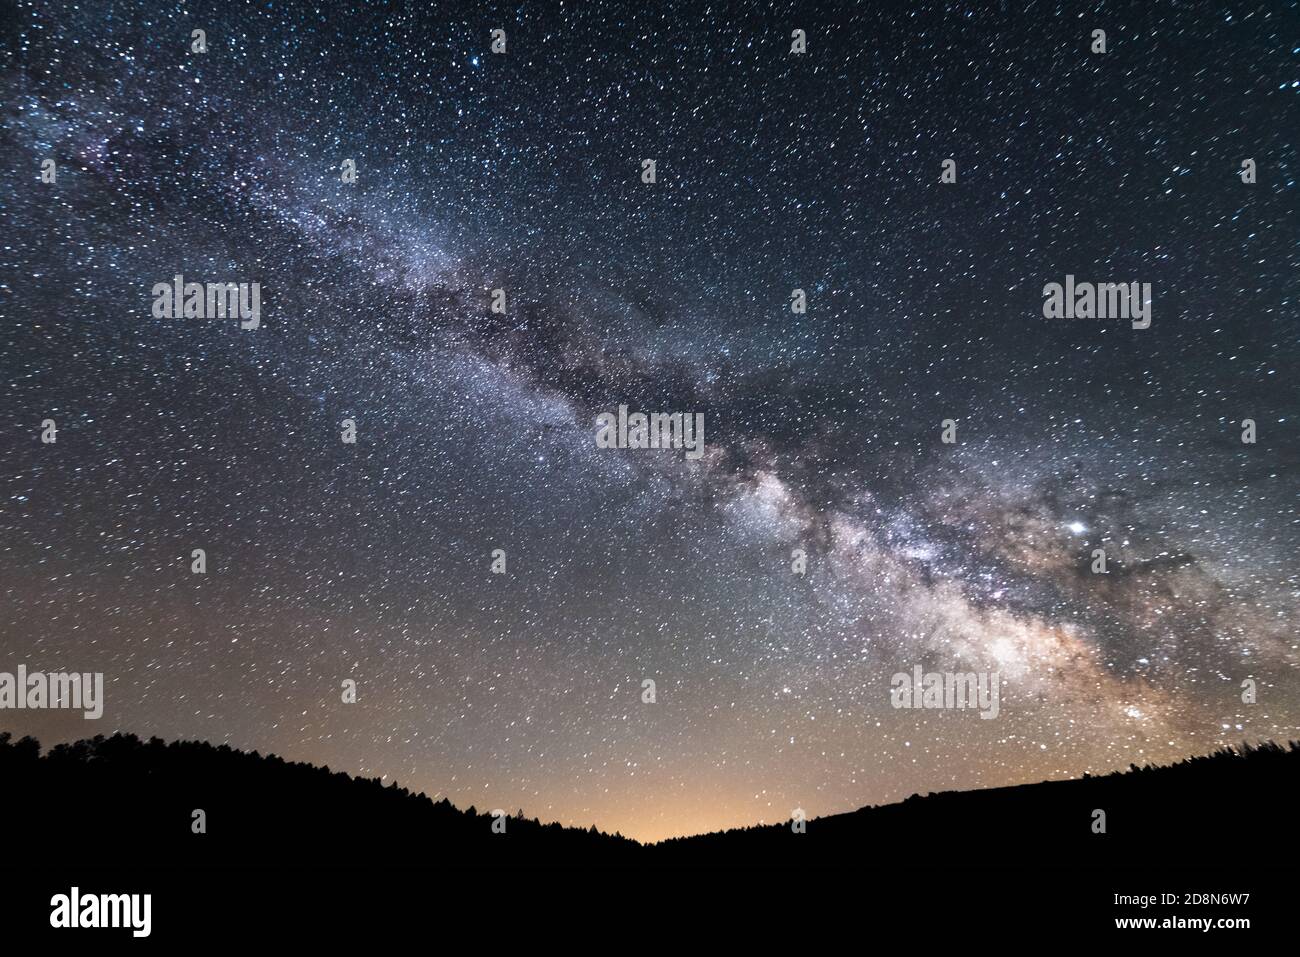 Lunga esposizione Fotografia della Via Lattea e del suo centro galattico su una foresta vicino alla città di Villardeciervos e Boya in Sierra de la Culebra, Zamora. Foto Stock